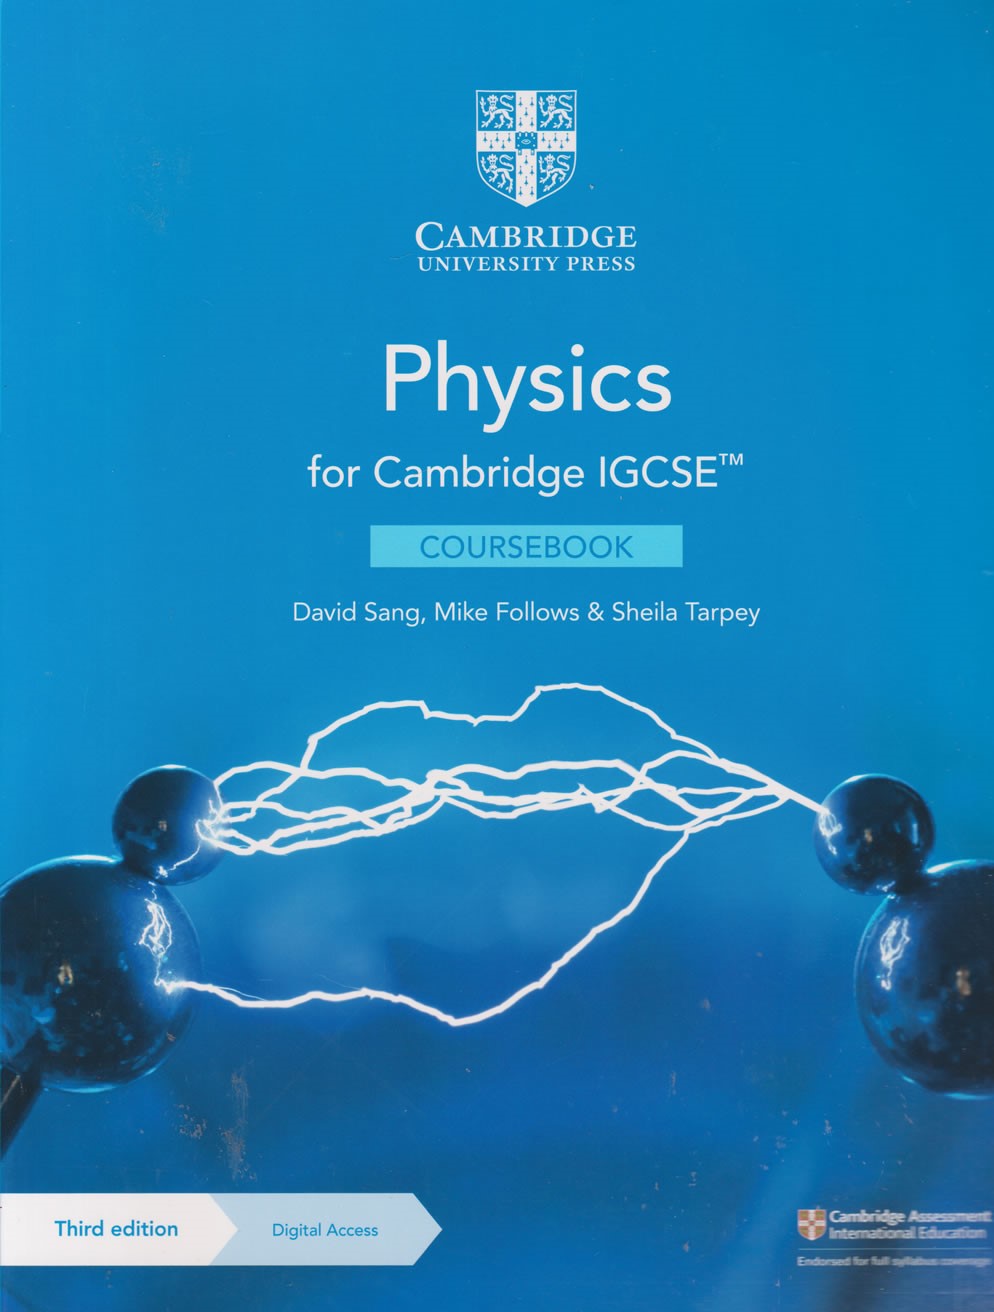 igcse physics workbook answers hodder education